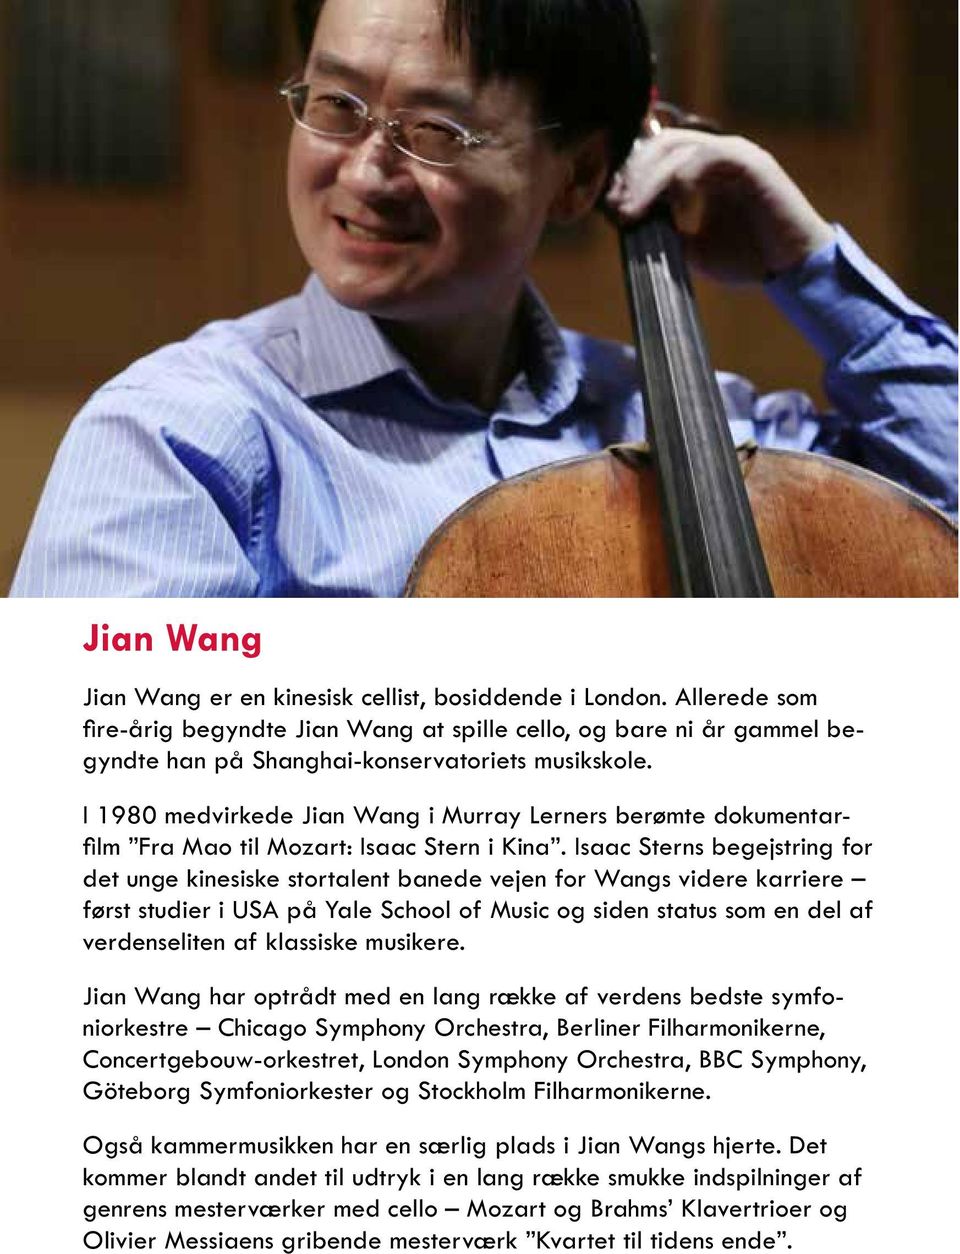 Isaac Sterns begejstring for det unge kinesiske stortalent banede vejen for Wangs videre karriere først studier i USA på Yale School of Music og siden status som en del af verdenseliten af klassiske